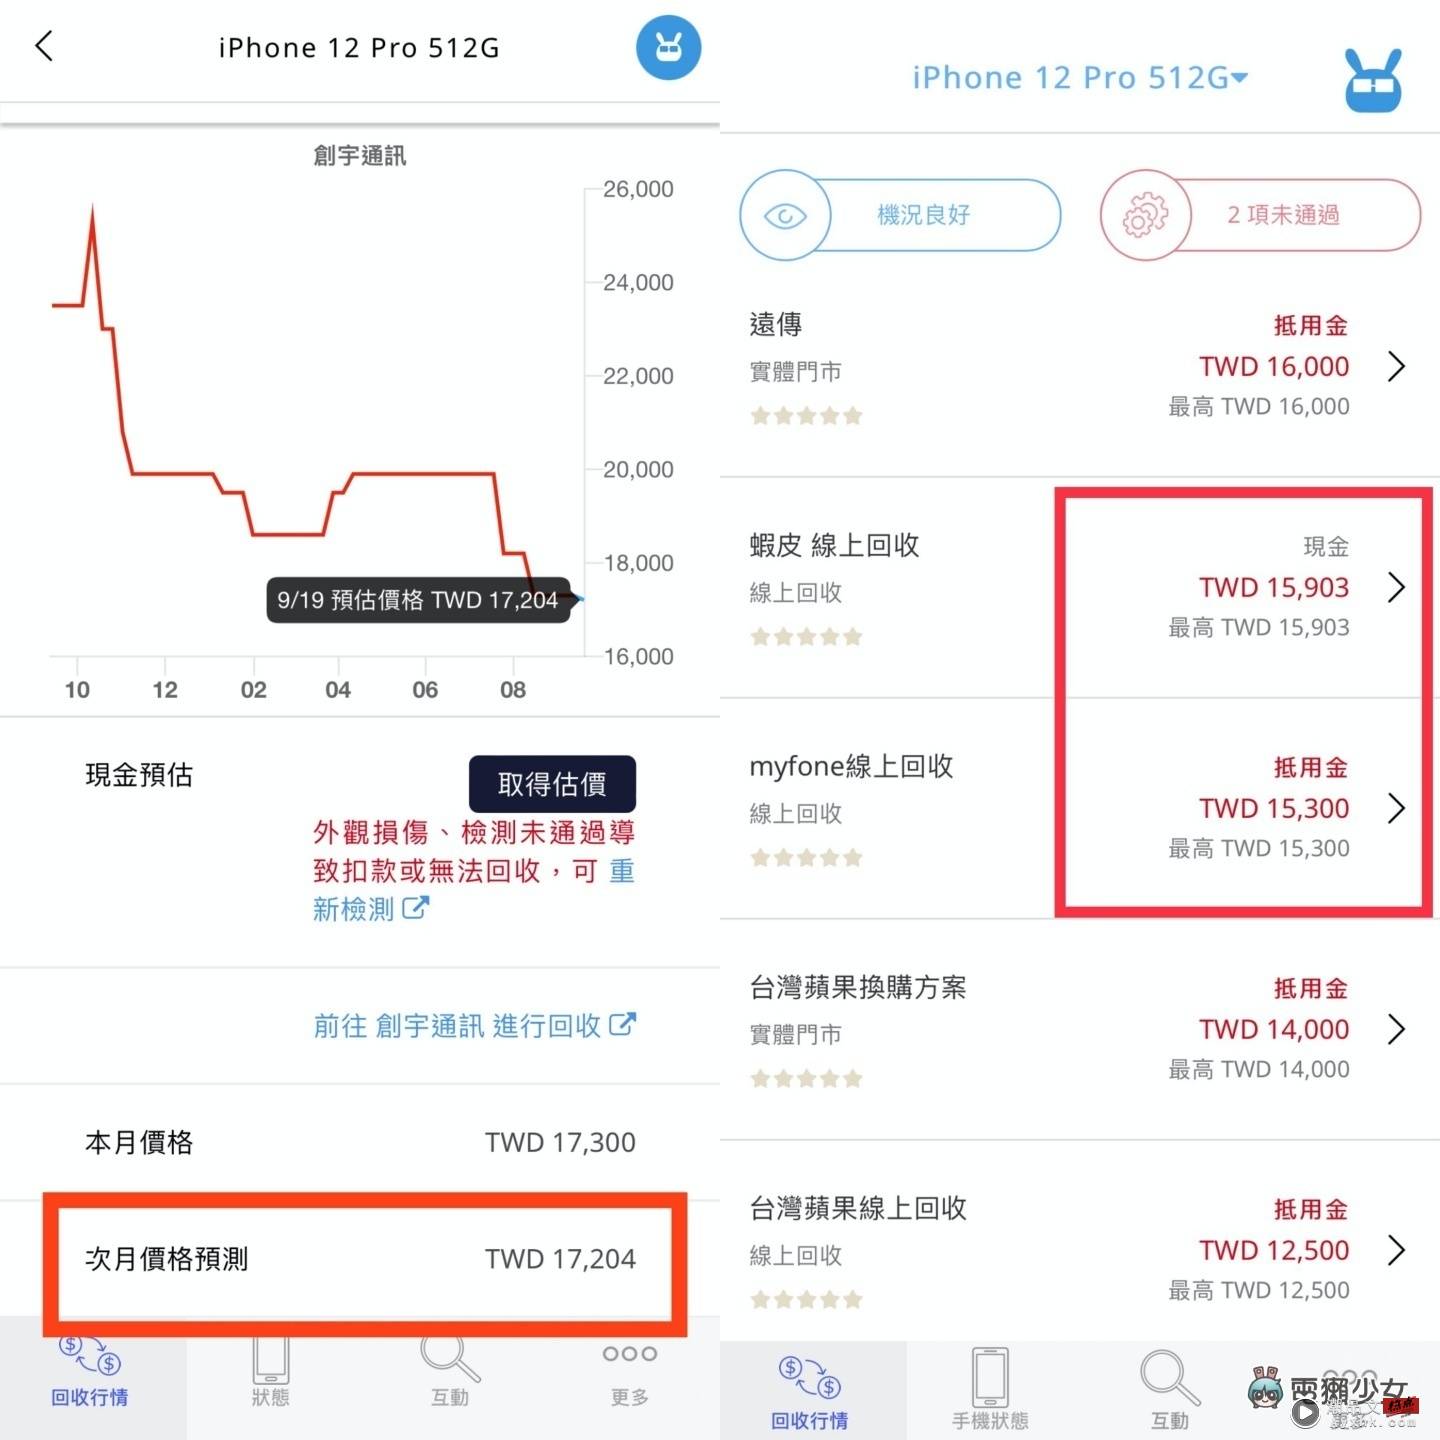 好想买 iPhone 14 Pro 但钱钱不够！靠卖旧机补贴怎样最划算？ 中国台湾二手通路回收价，‘ 手机医生 ’帮你一次比清楚！（Android／iOS） 数码科技 图8张